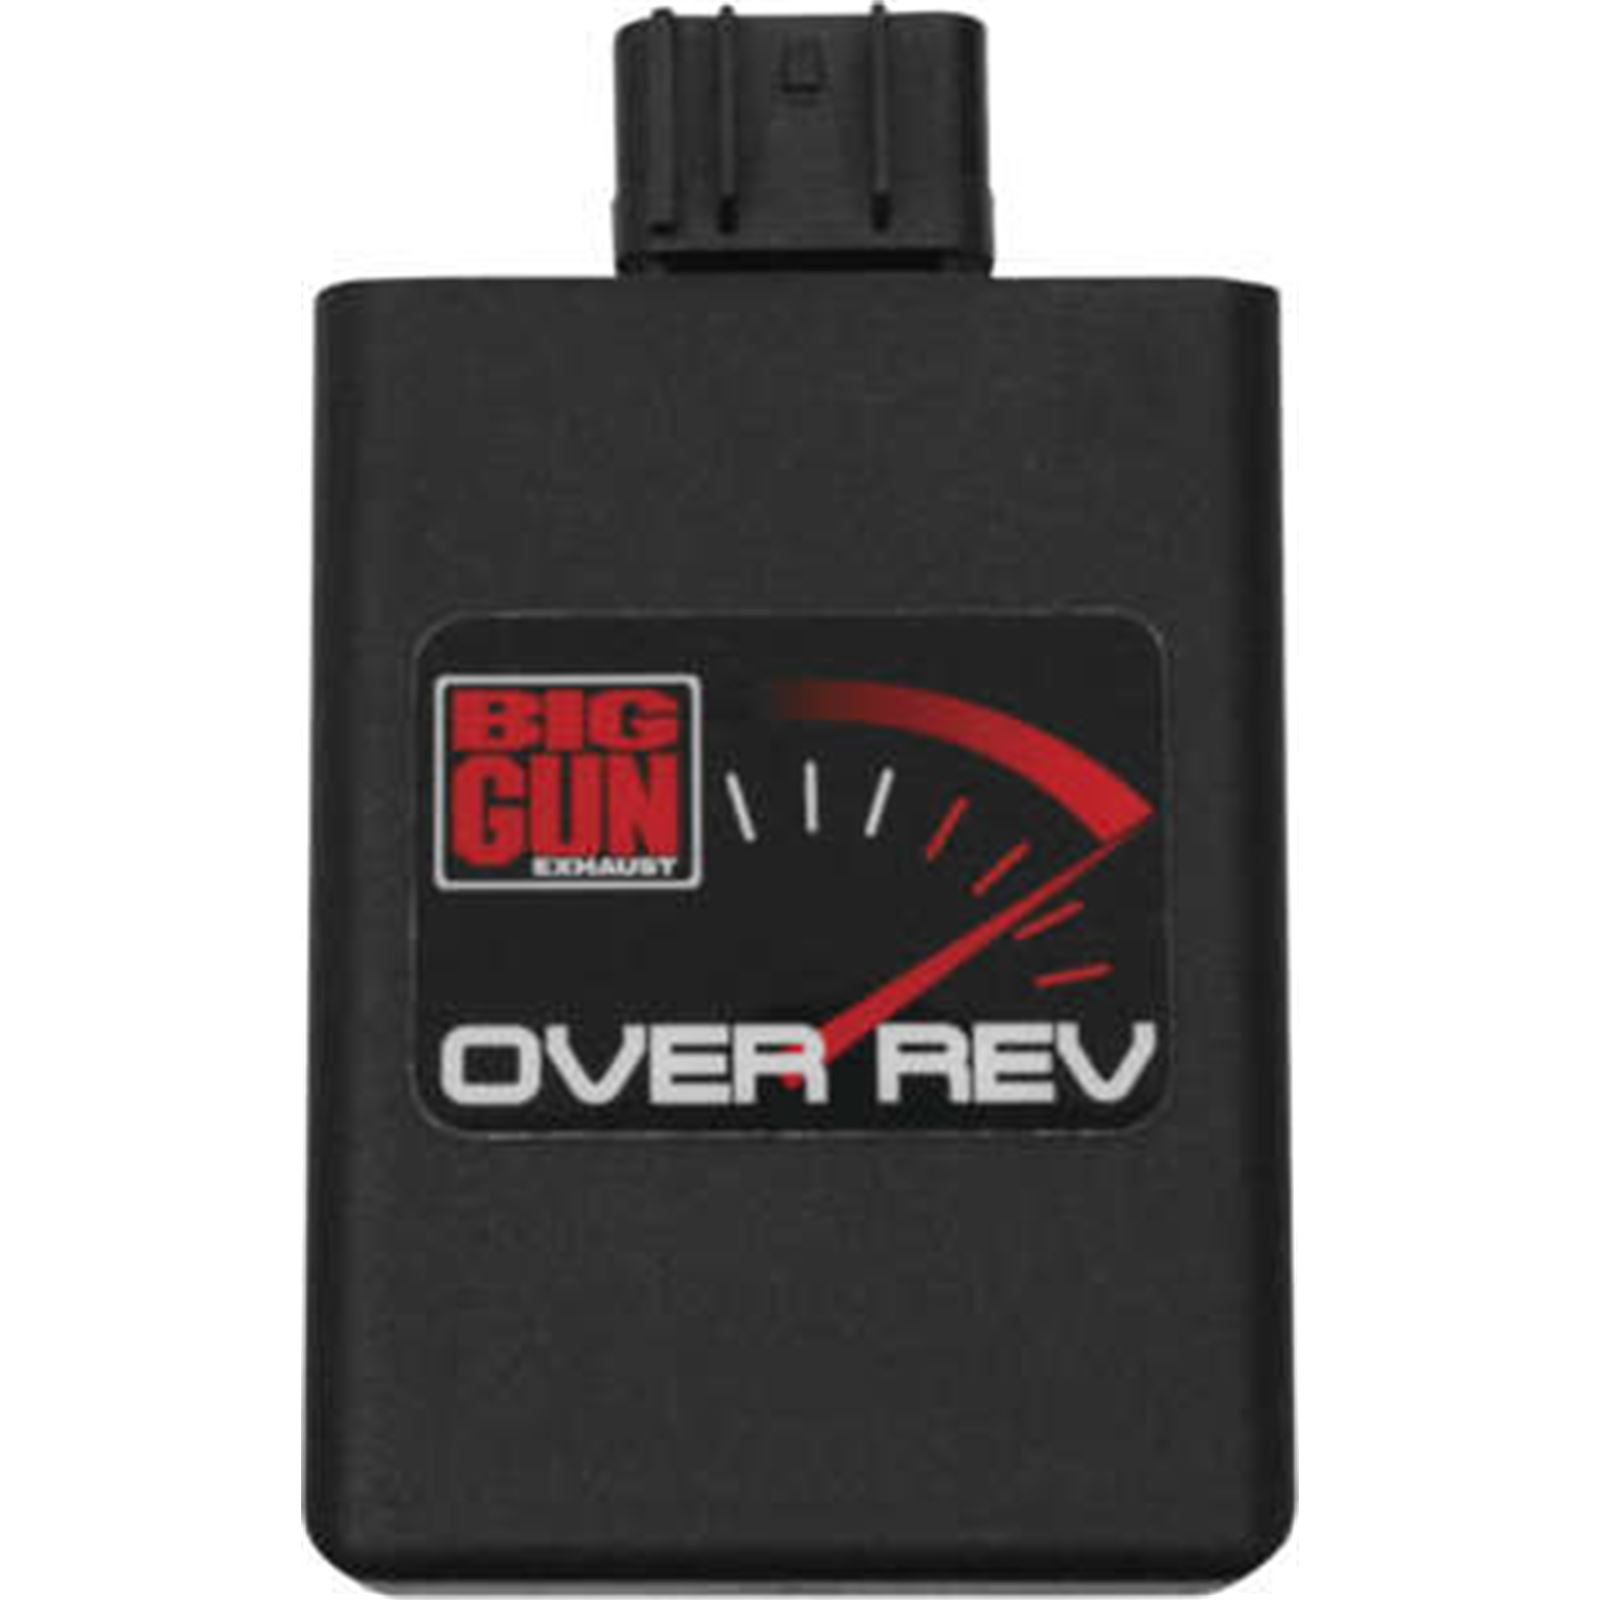 Big Gun Rev Box for Polaris ATV/UTV